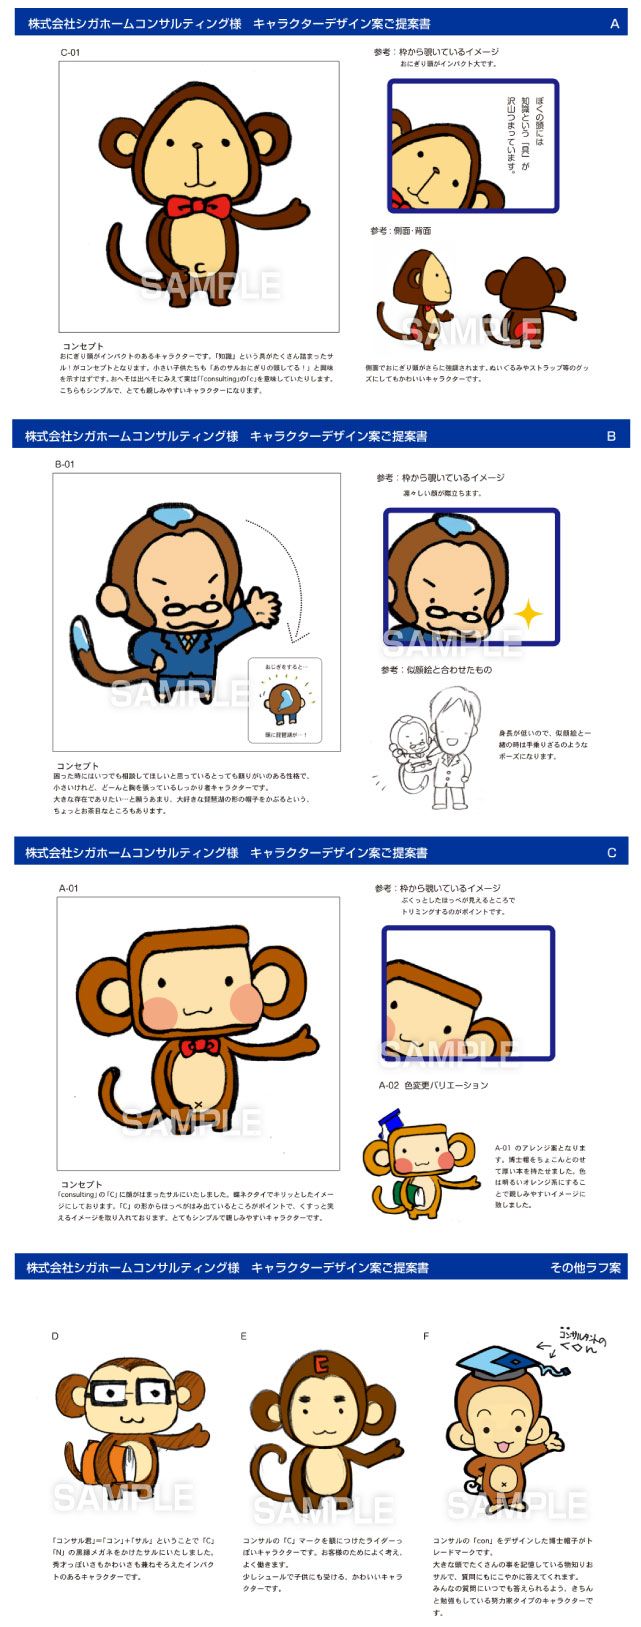 C66-04 猿のキャラクターデザイン、ご提案事例　手描きでアイデア出し段階の提案書です。